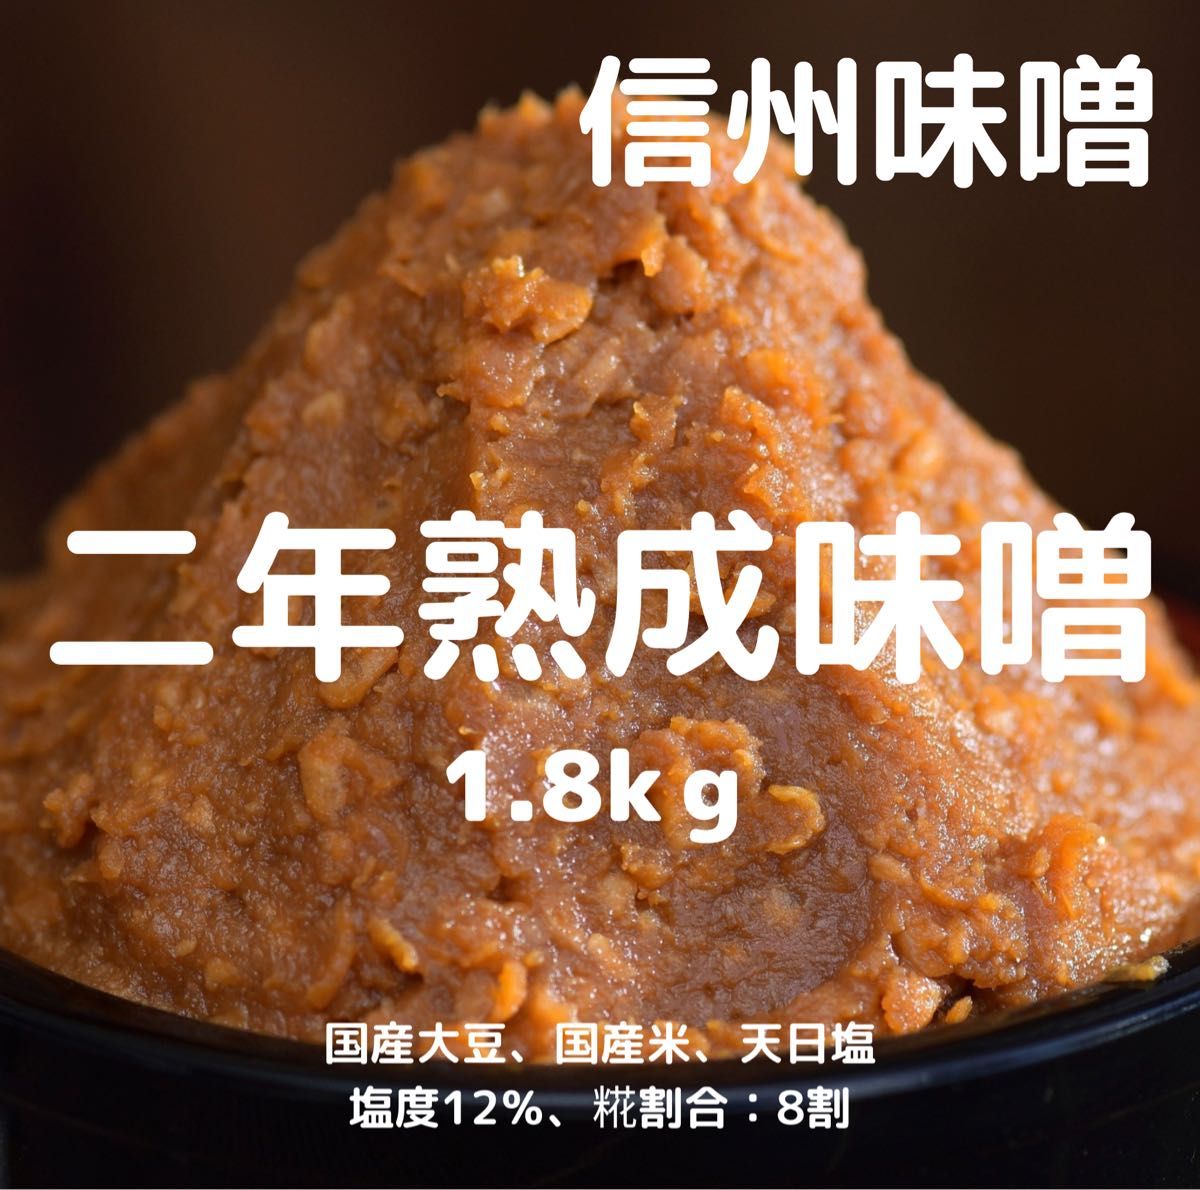 信州味噌 二年熟成味噌 豊熟 1.8kg(900g×2個) 天然醸造 天日塩使用